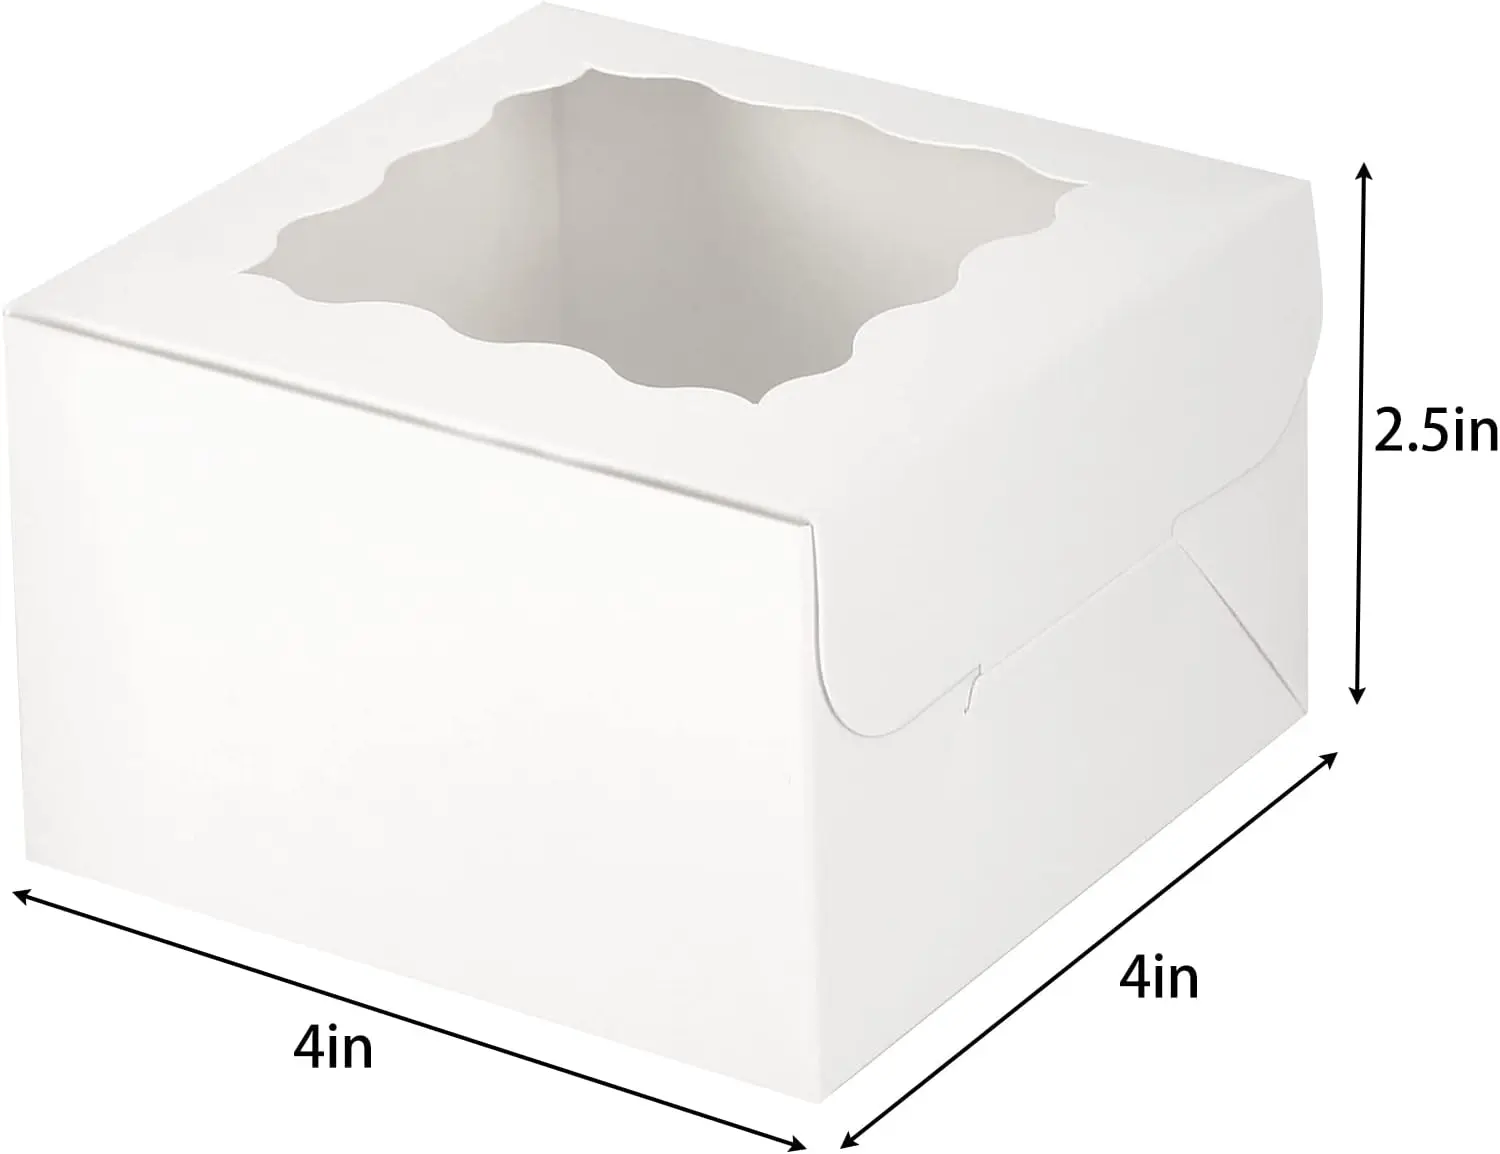 Commercio all'ingrosso cibo grado biscotto Dessert scatola di carta scatola quadrata cartone usa e getta con finestra